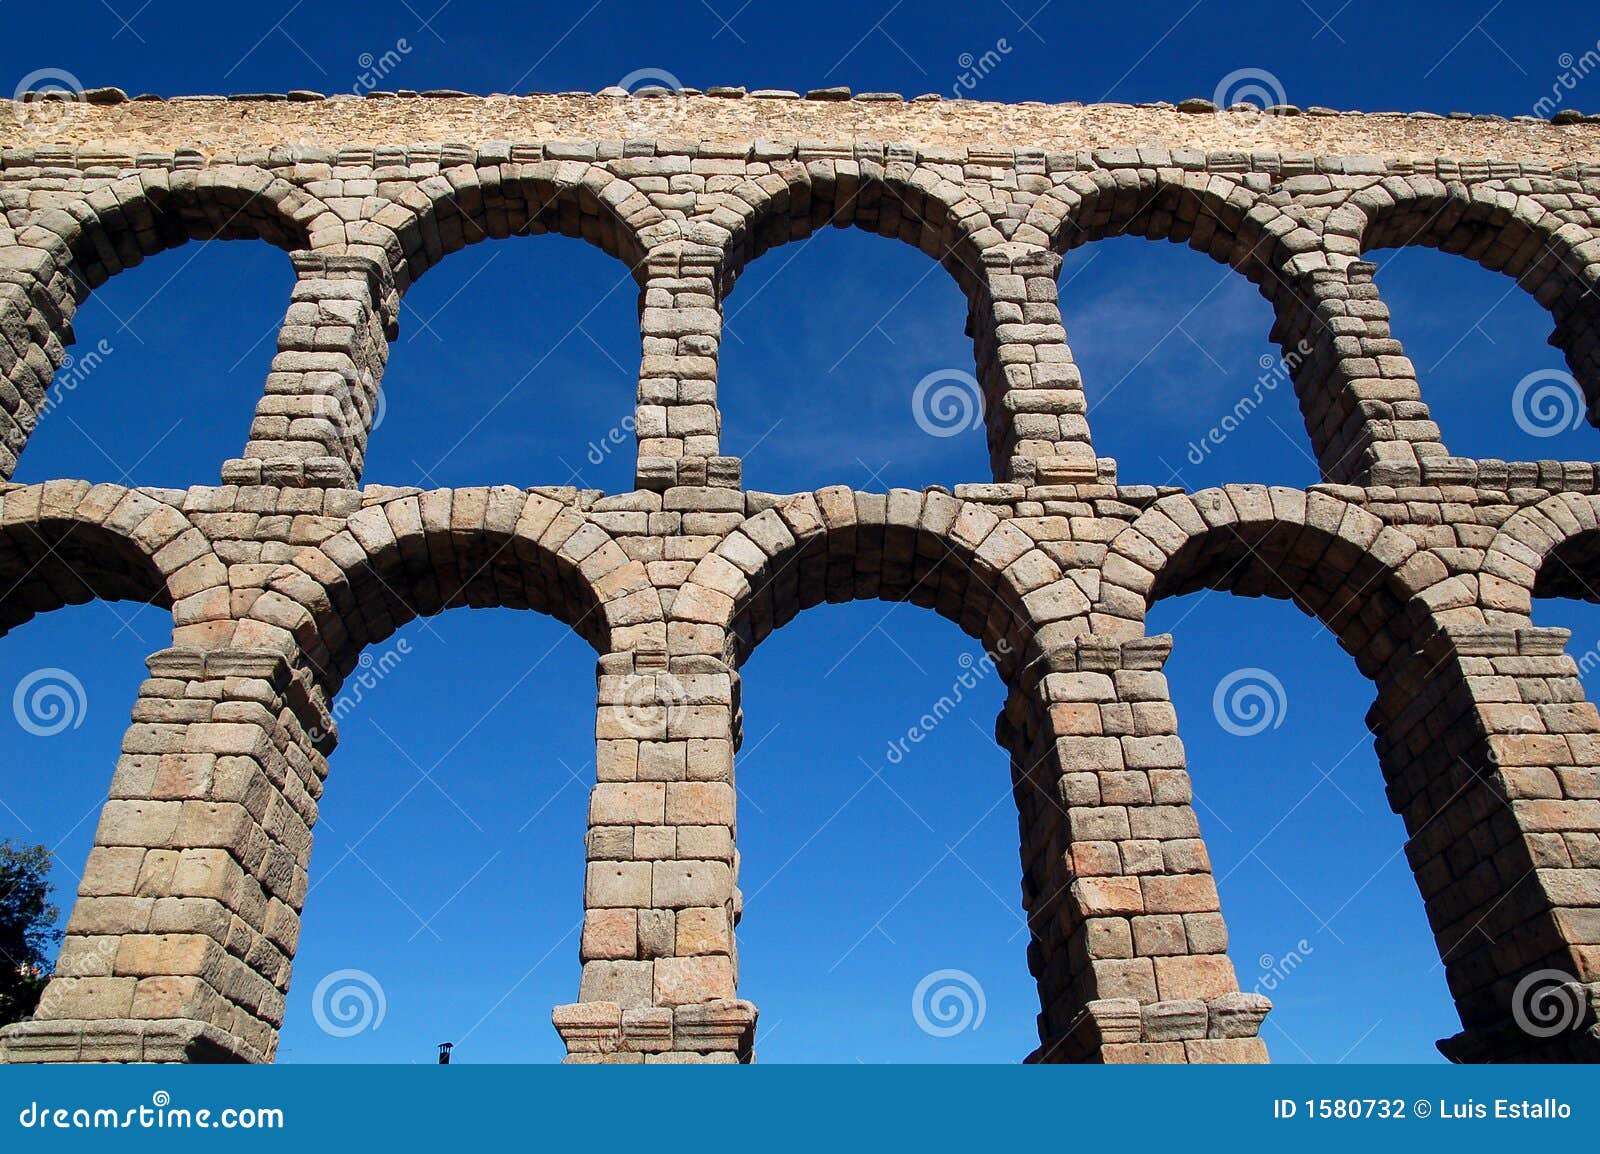 aqueduct 9